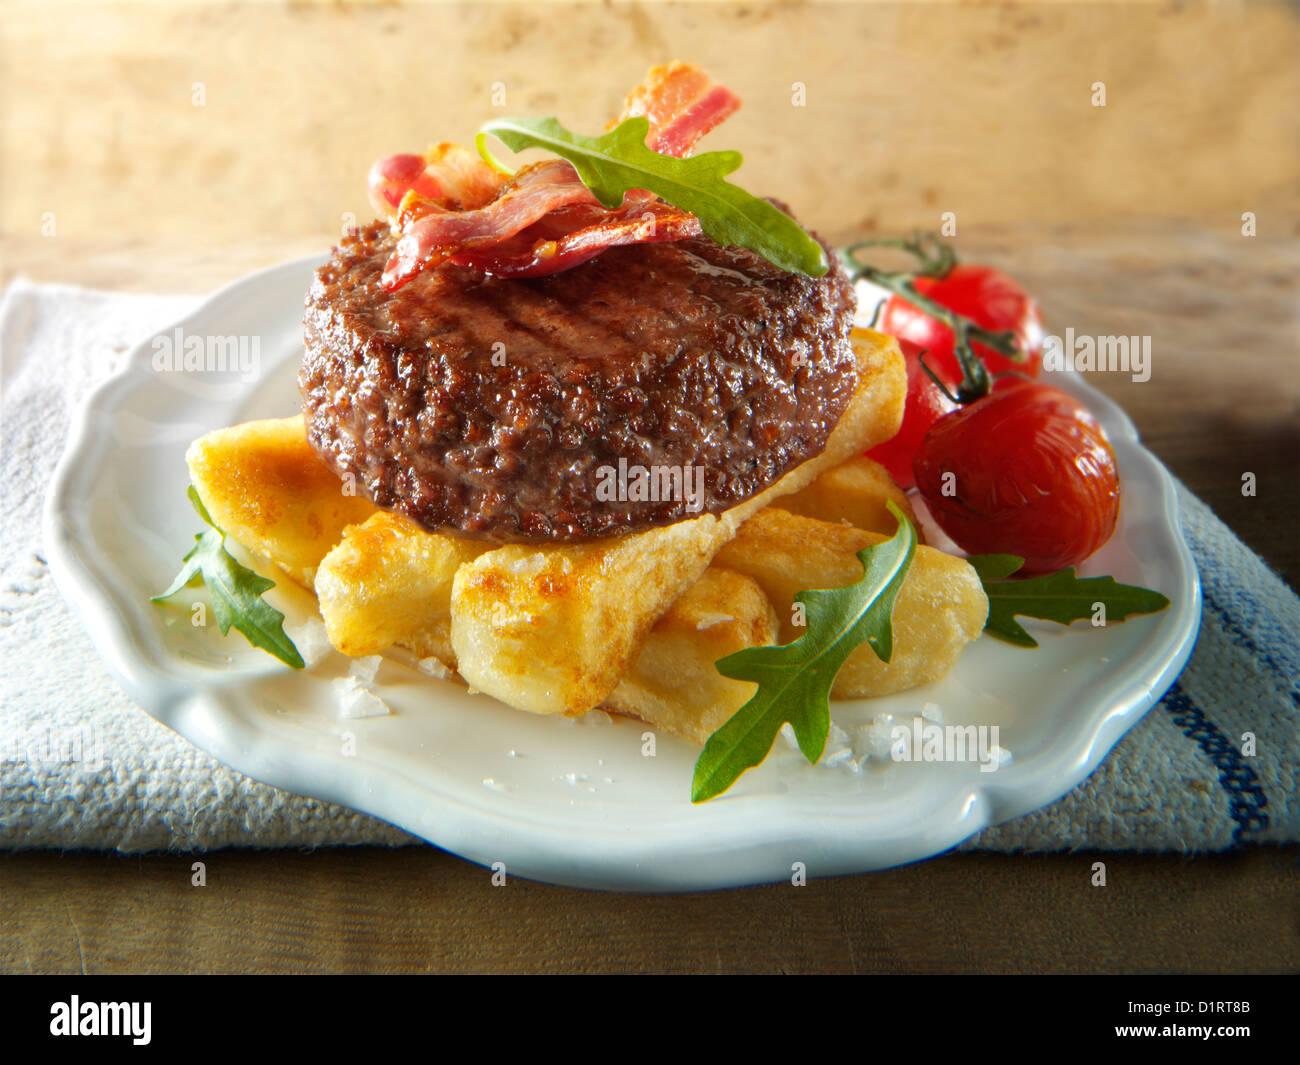 Gegrilltes Rindfleisch-Burger mit klobigen Pommes Frites und Salat Fotos Char. Funky Stockfotos Stockfoto